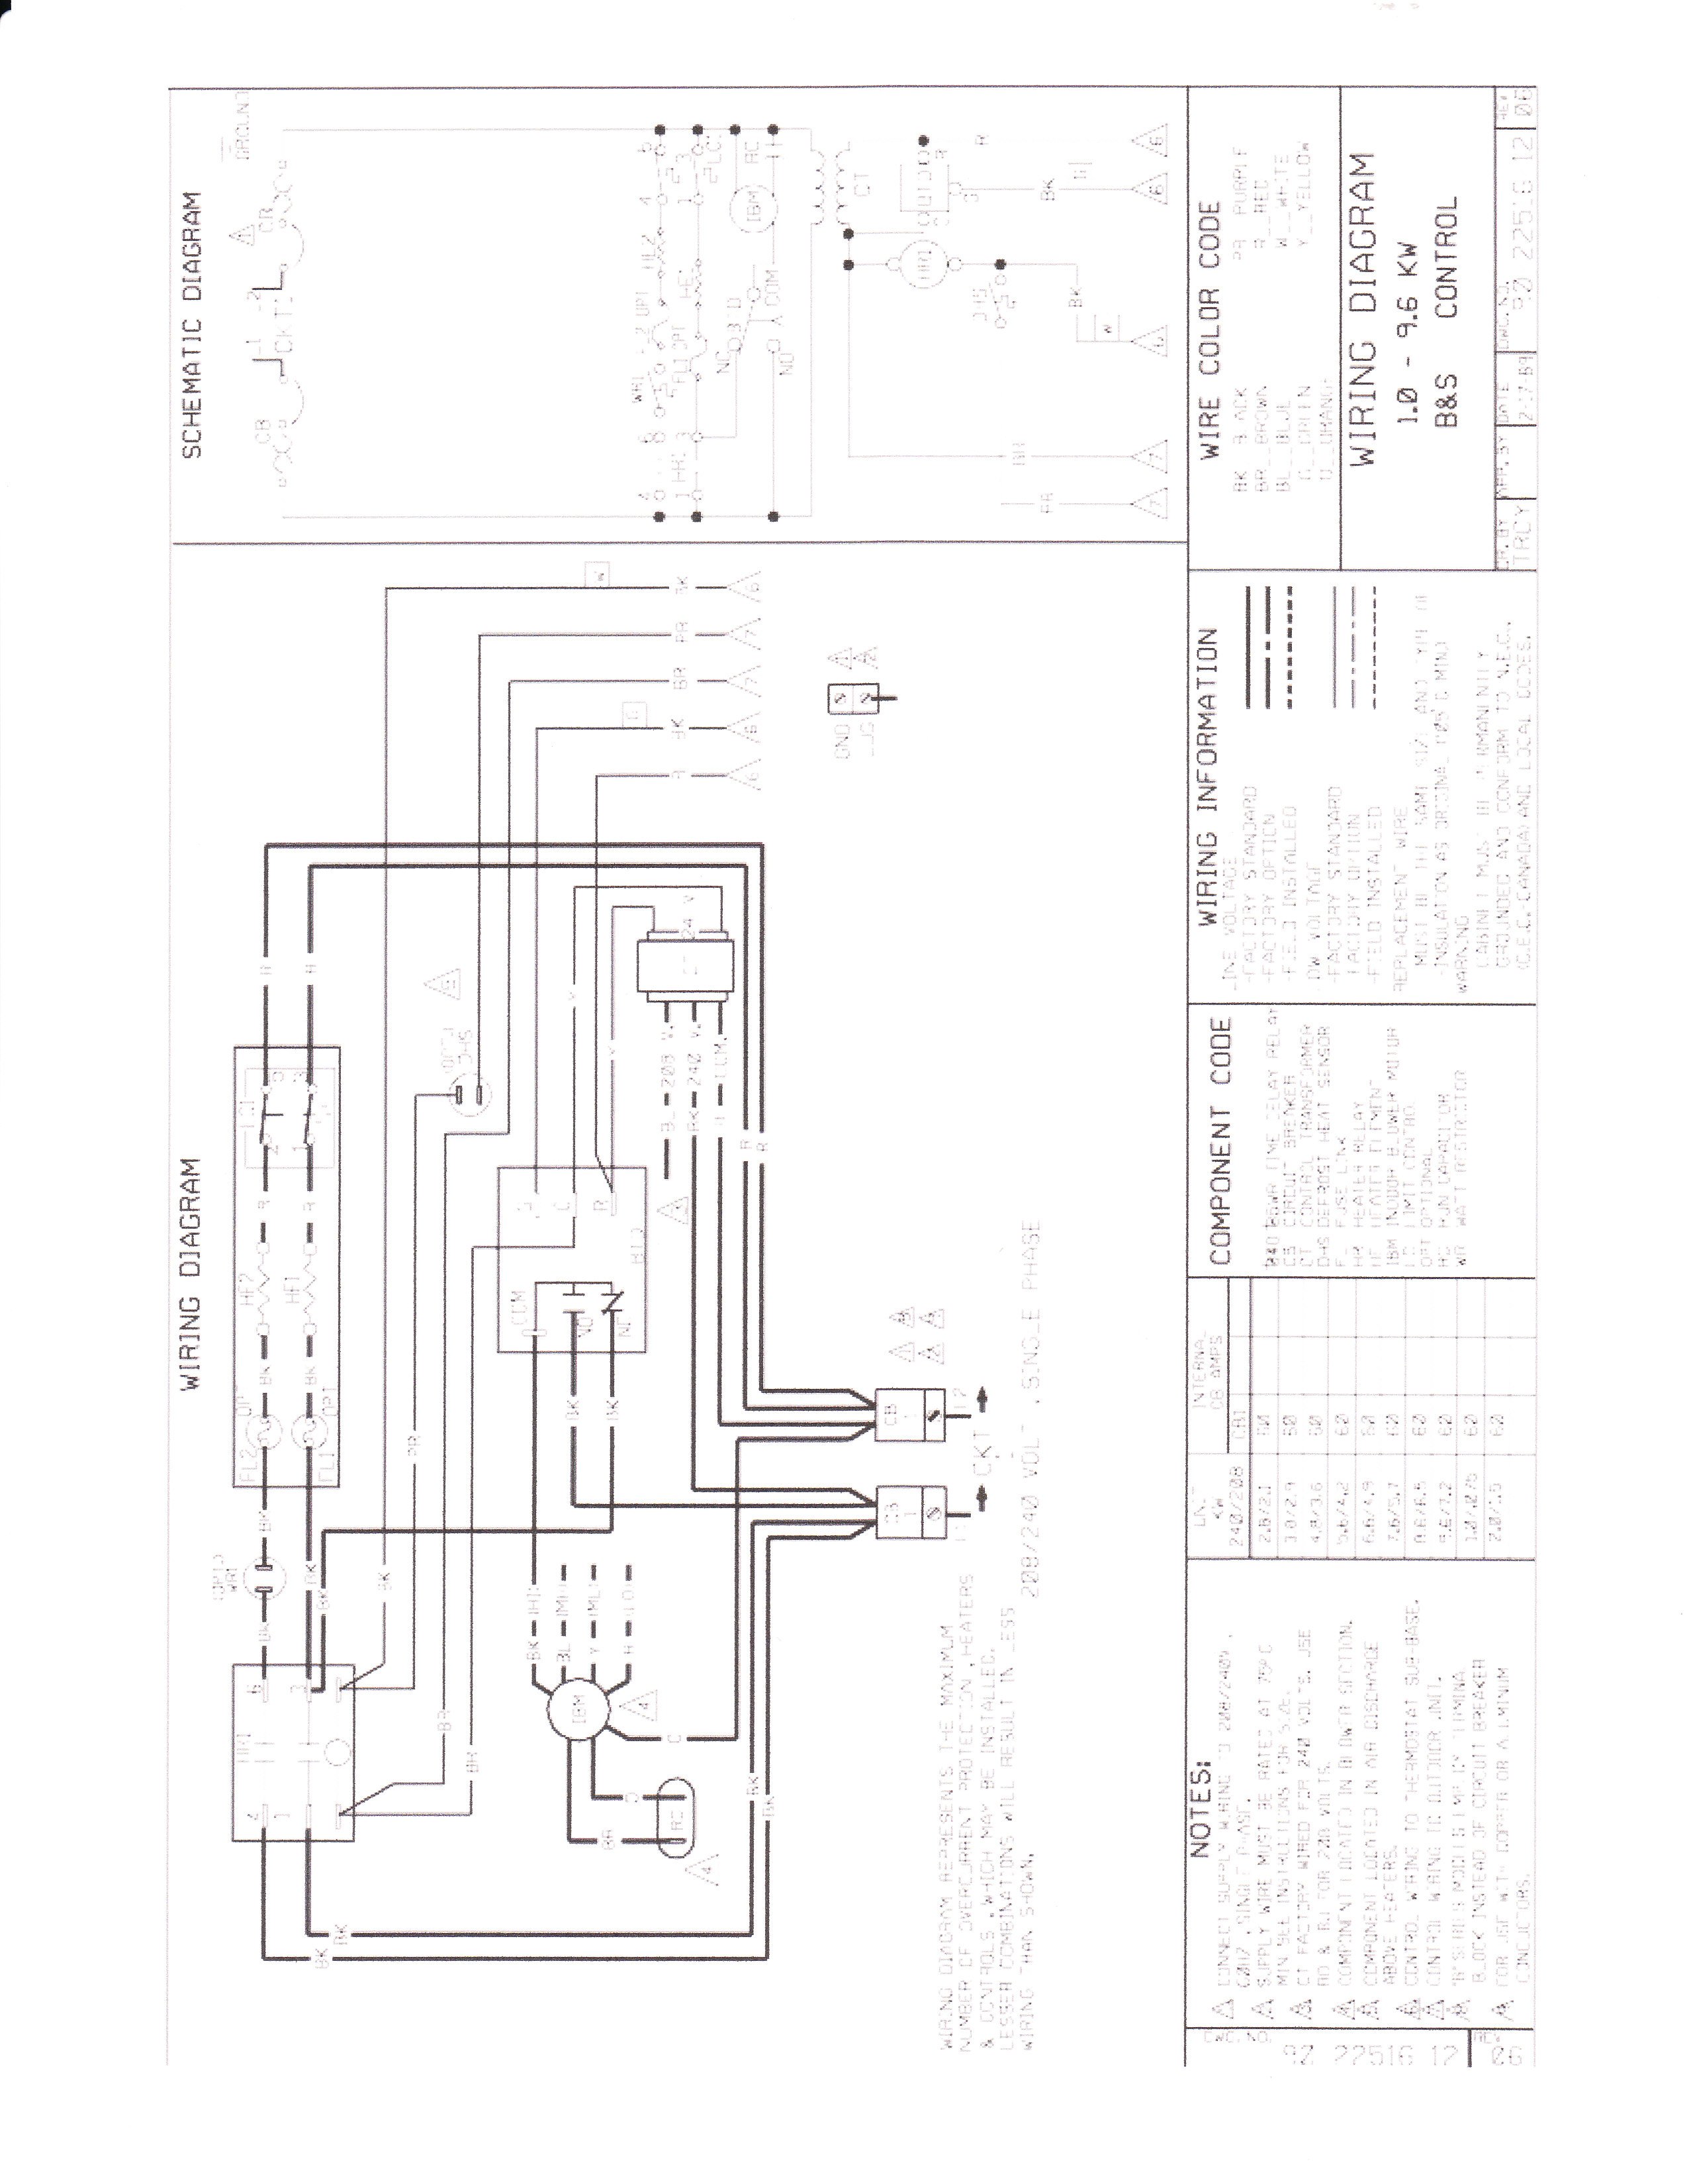 rheem 47-100436-05 wiring diagram